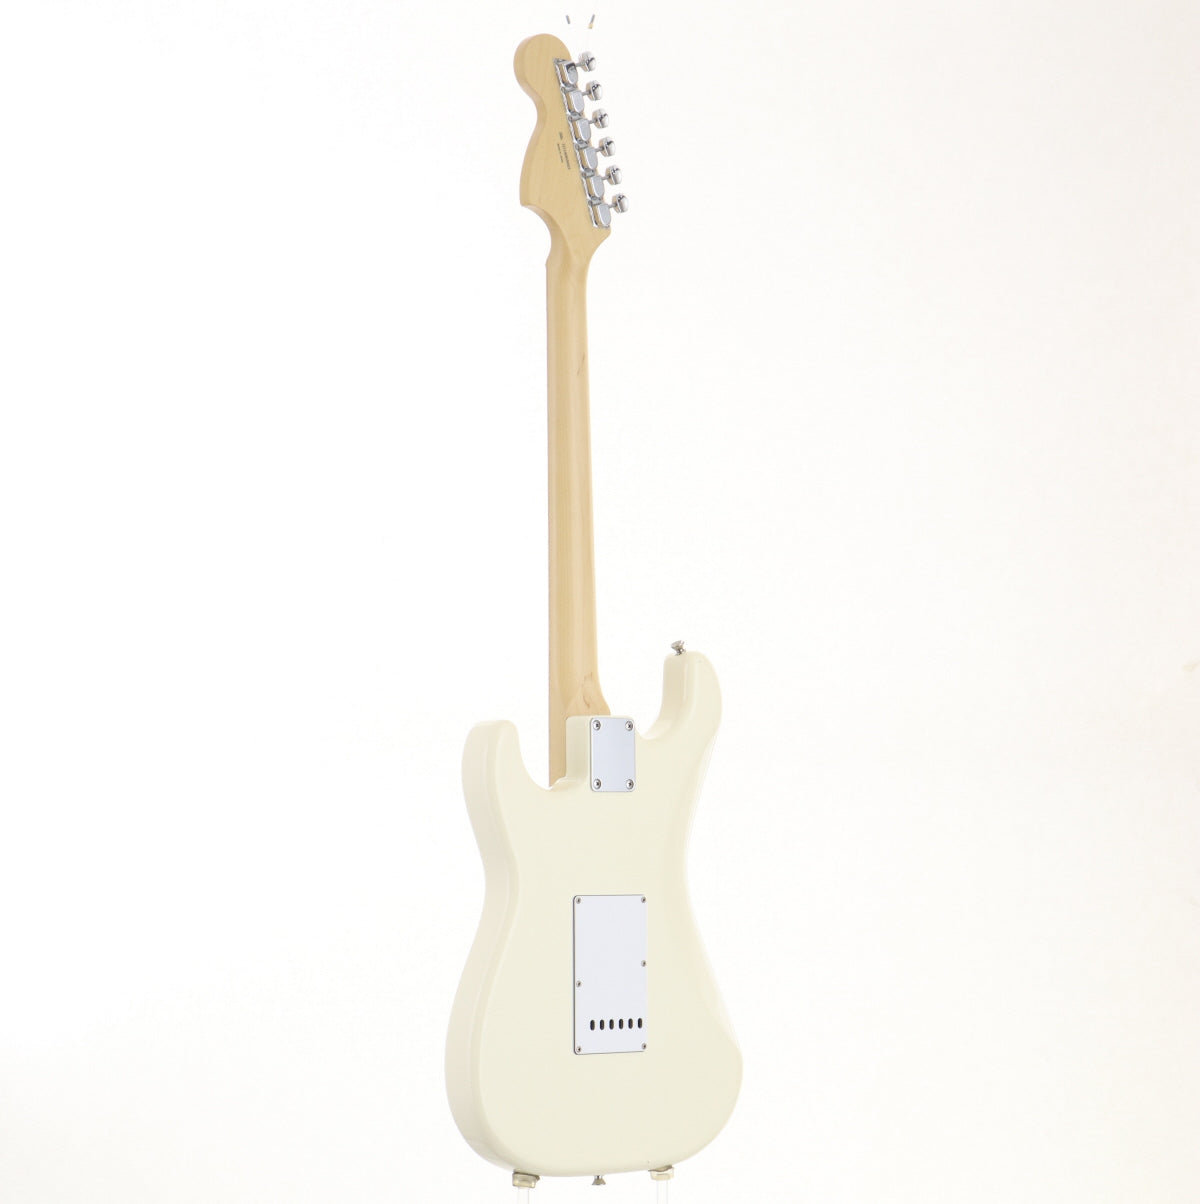 [SN JD18005603] USED Fender / M.I.J. Hybrid 68 Stratocaster Arctic White [06]